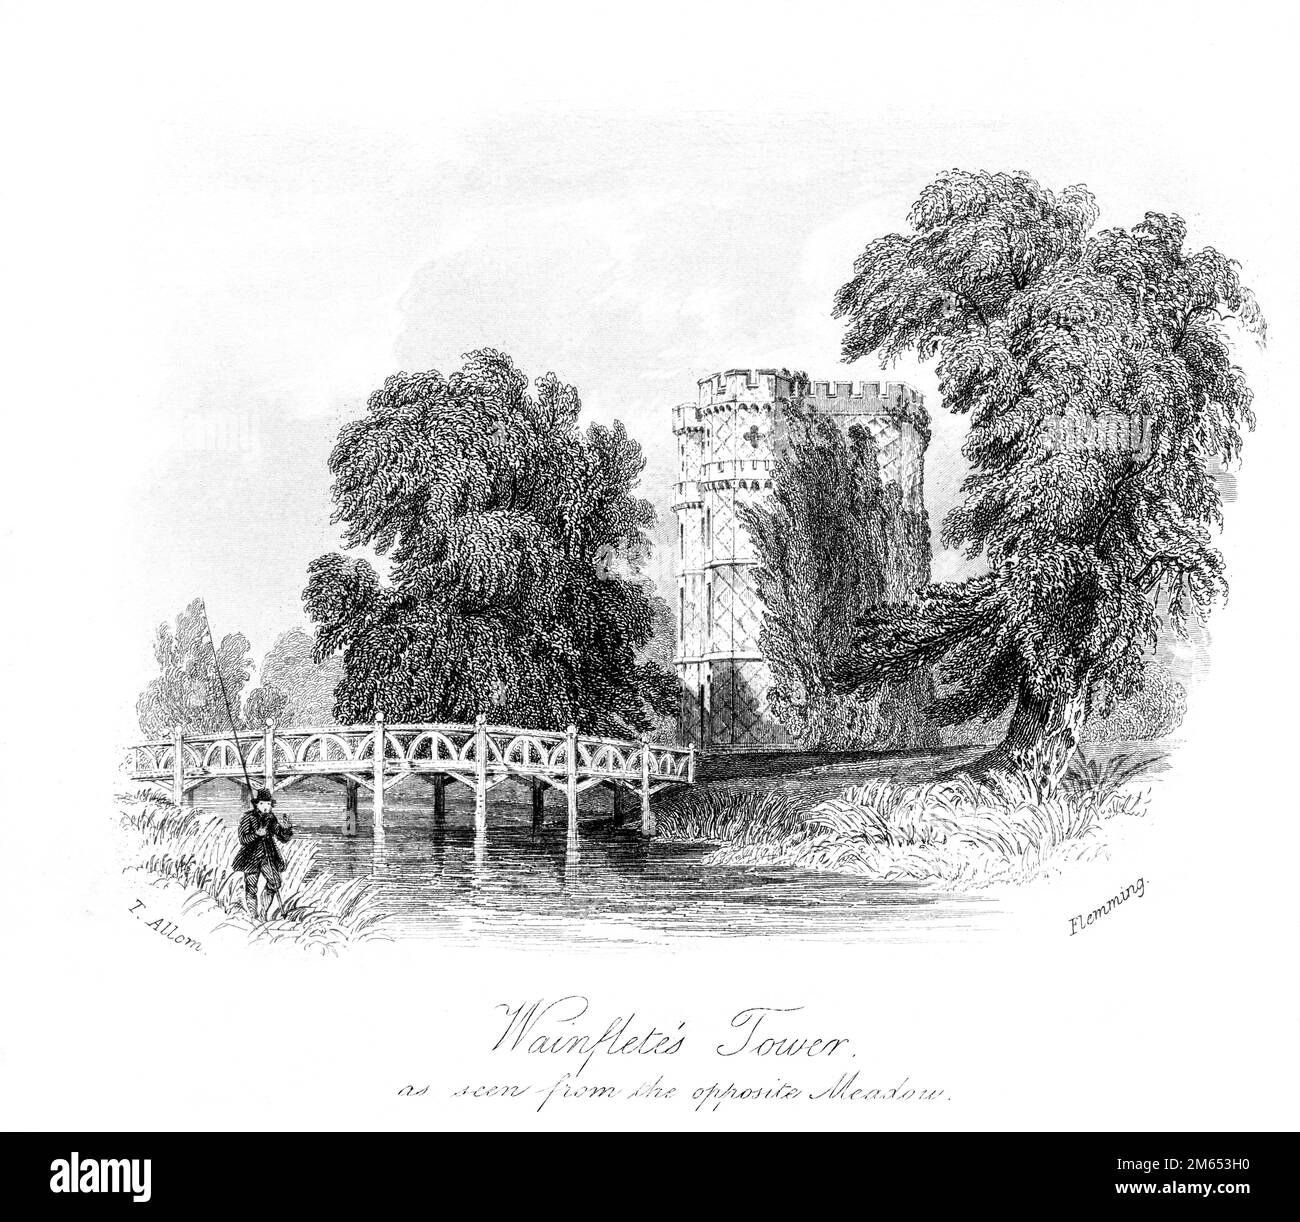 Eine Gravur des Wainfletes Tower, die von der gegenüberliegenden Meadow (Wayneflete Tower) aus gesehen wurde. Surrey scannte in hoher Auflösung aus einem Buch, das 1850 gedruckt wurde. Th Stockfoto